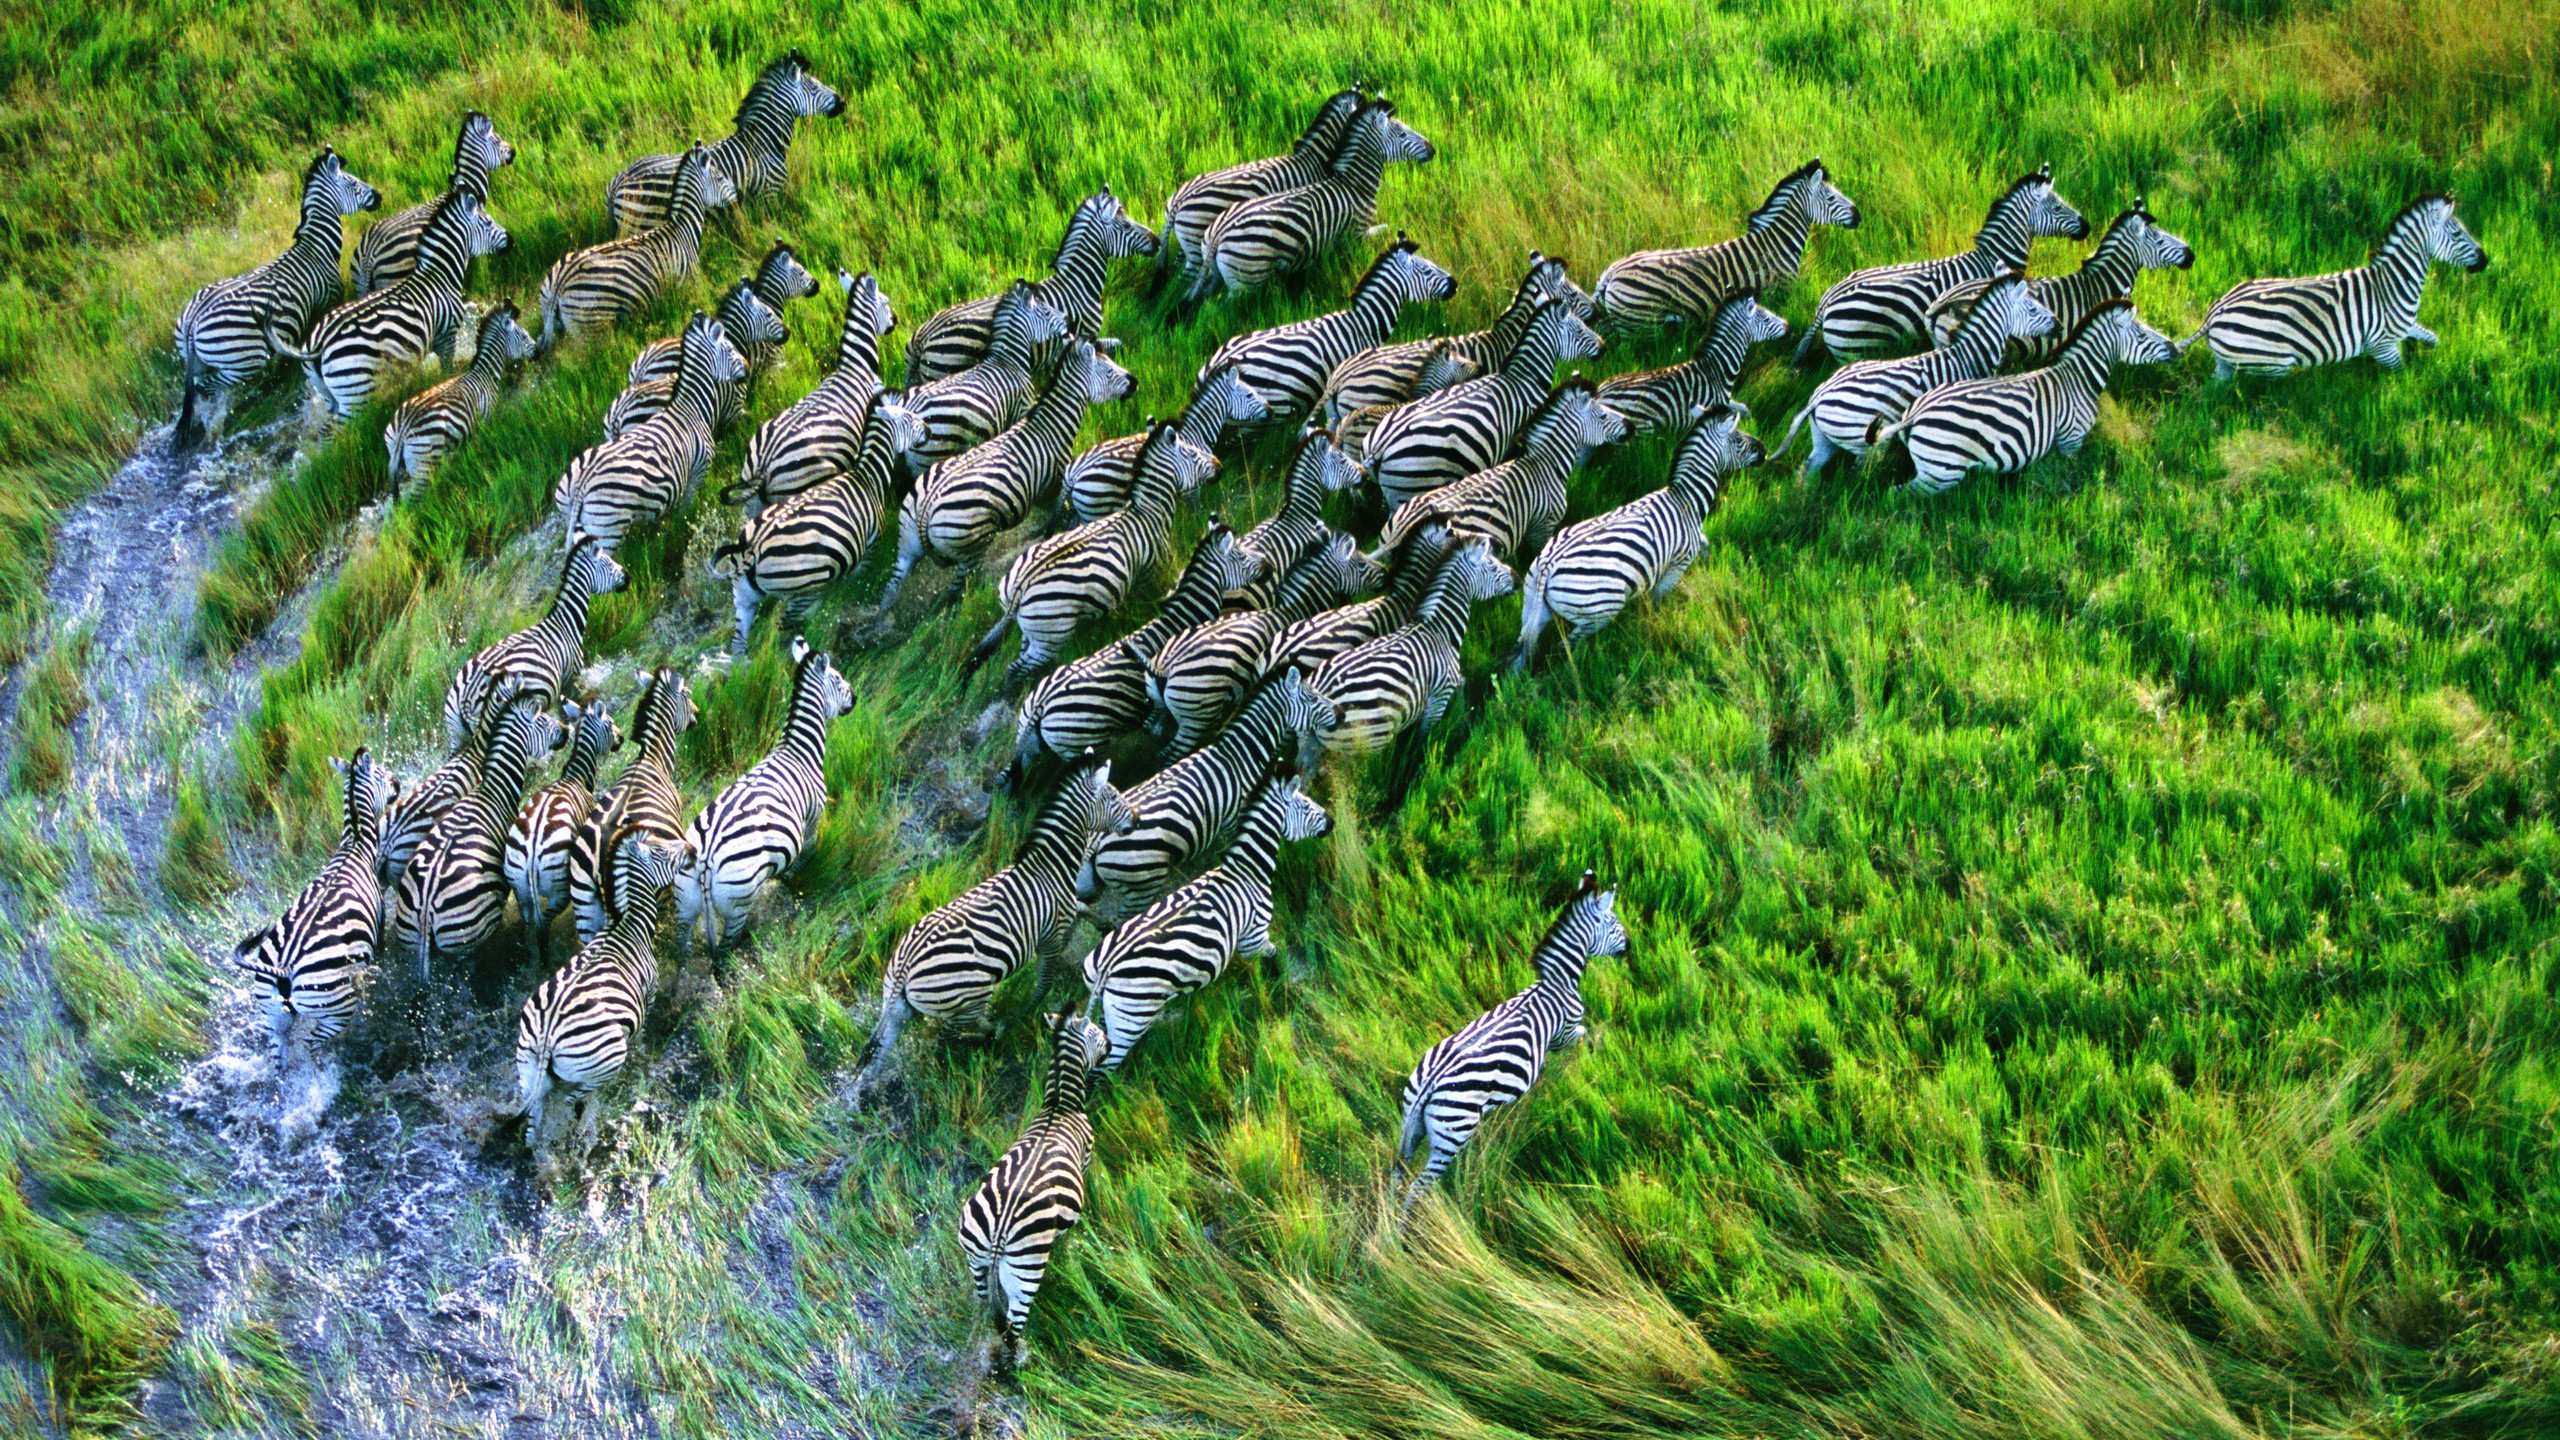 General 2560x1440 nature zebras animals running